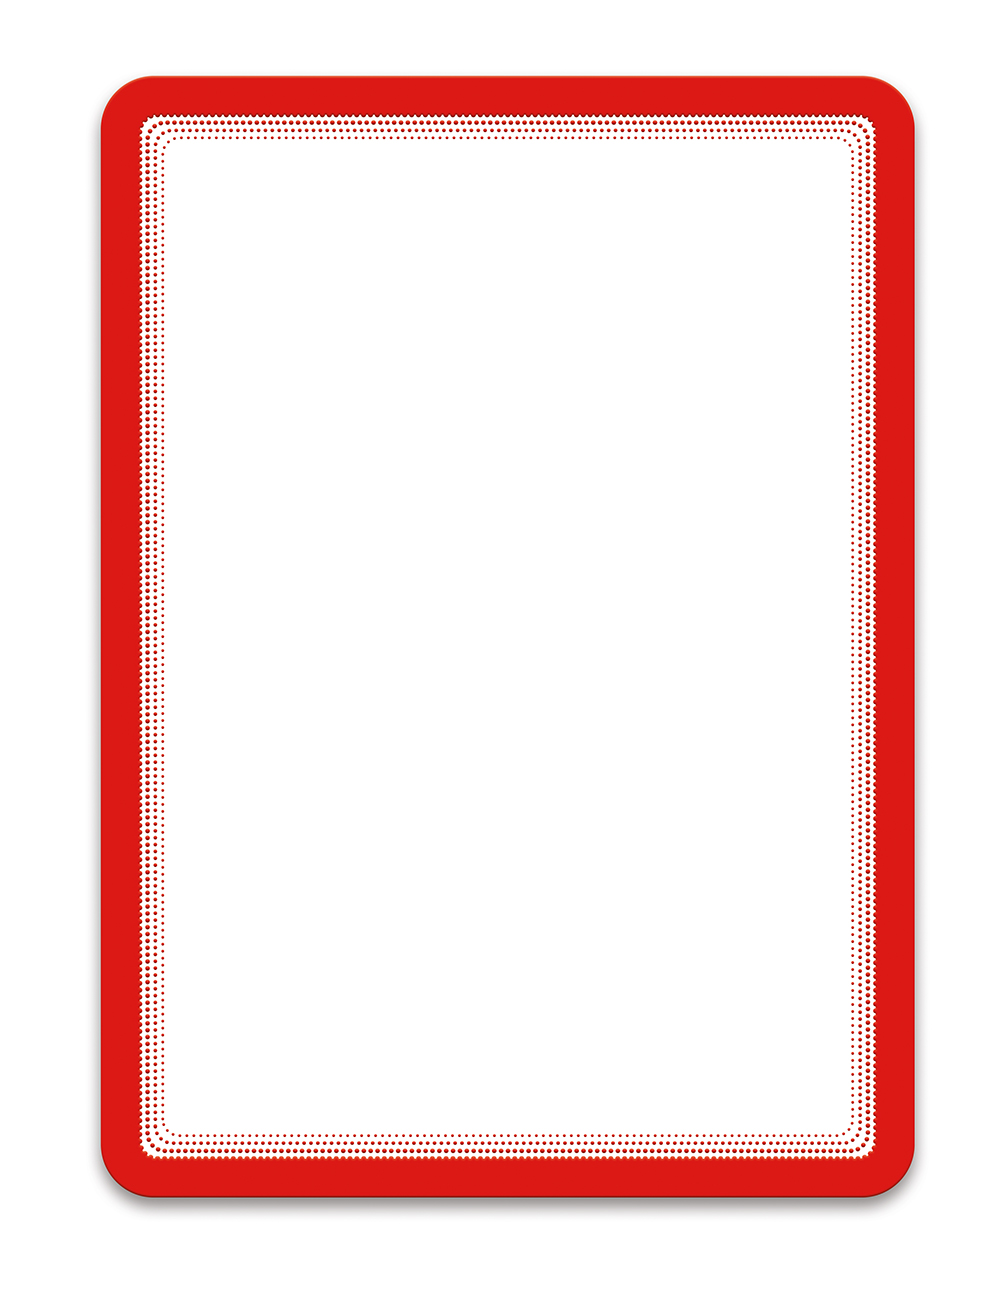 Tarifold Magneto - samolepicí rámeček, A4, červený - 2 ks